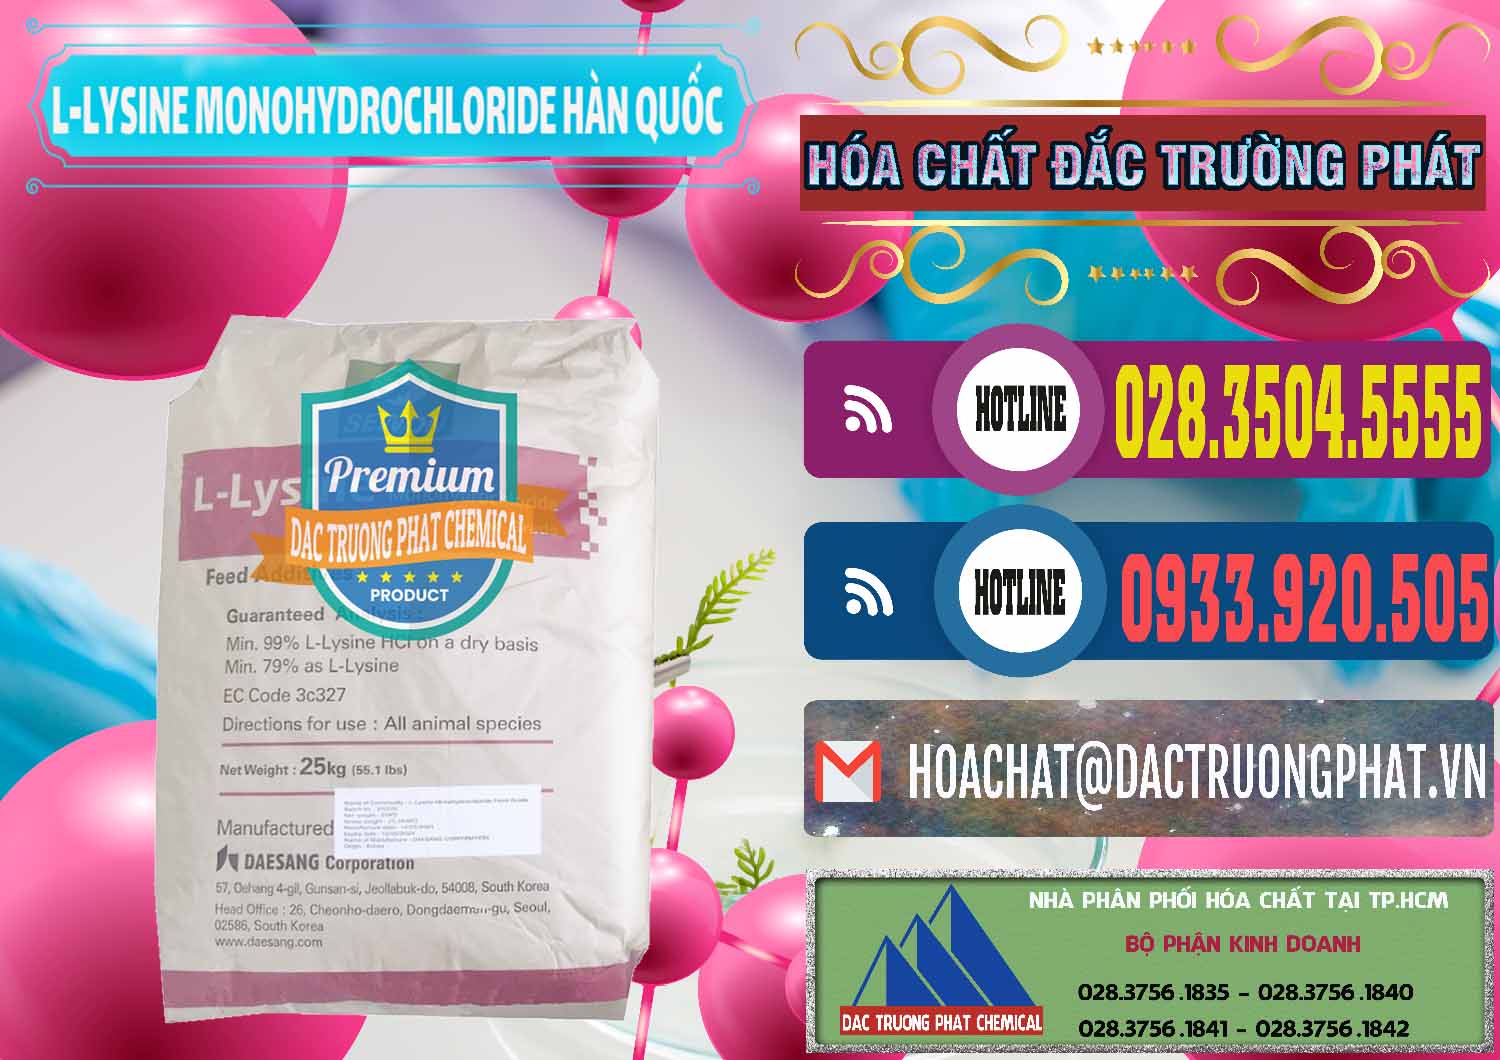 Cty chuyên cung cấp _ bán L-Lysine Monohydrochloride Feed Grade Sewon Hàn Quốc Korea - 0302 - Công ty cung cấp ( phân phối ) hóa chất tại TP.HCM - muabanhoachat.com.vn